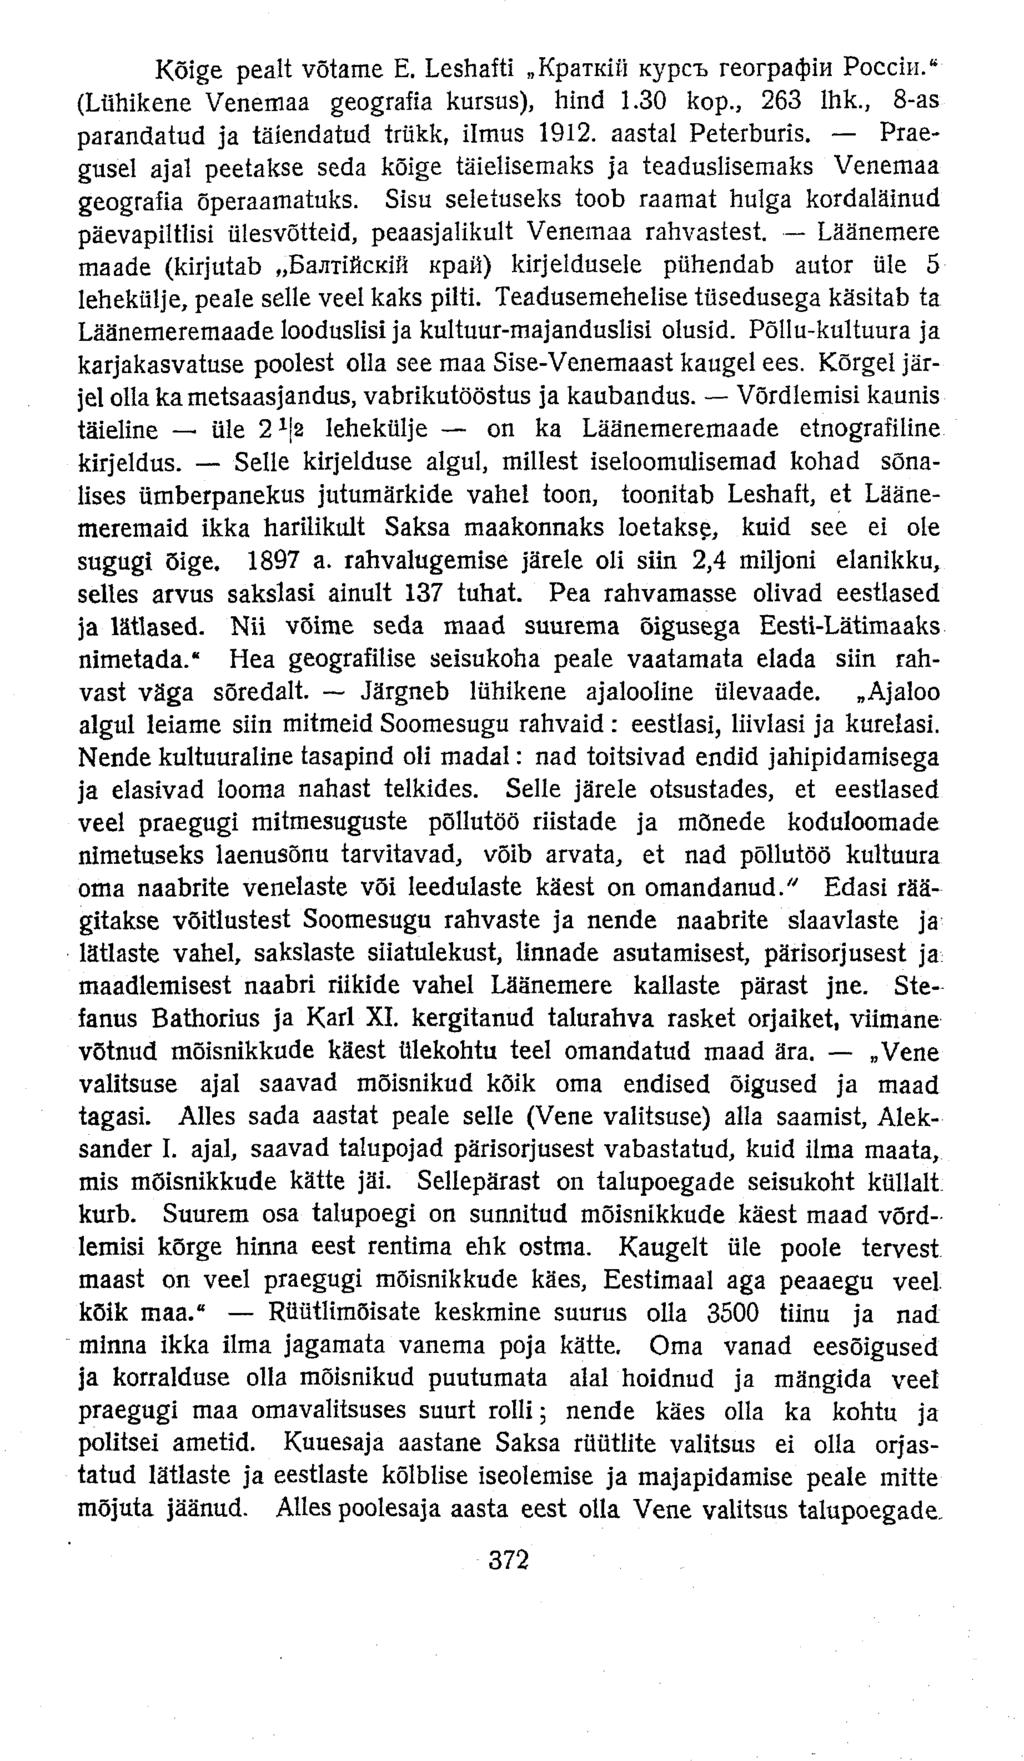 Kõige pealt võtame E. Leshafti KpaTKÜi Kypci. reorpa4)ih Poeem." (Lühikene Venemaa geografia kursus), hind 1.30 kop., 263 Ihk., 8-as parandatud ja täiendatud trükk, ilmus 1912. aastal Peterburis.